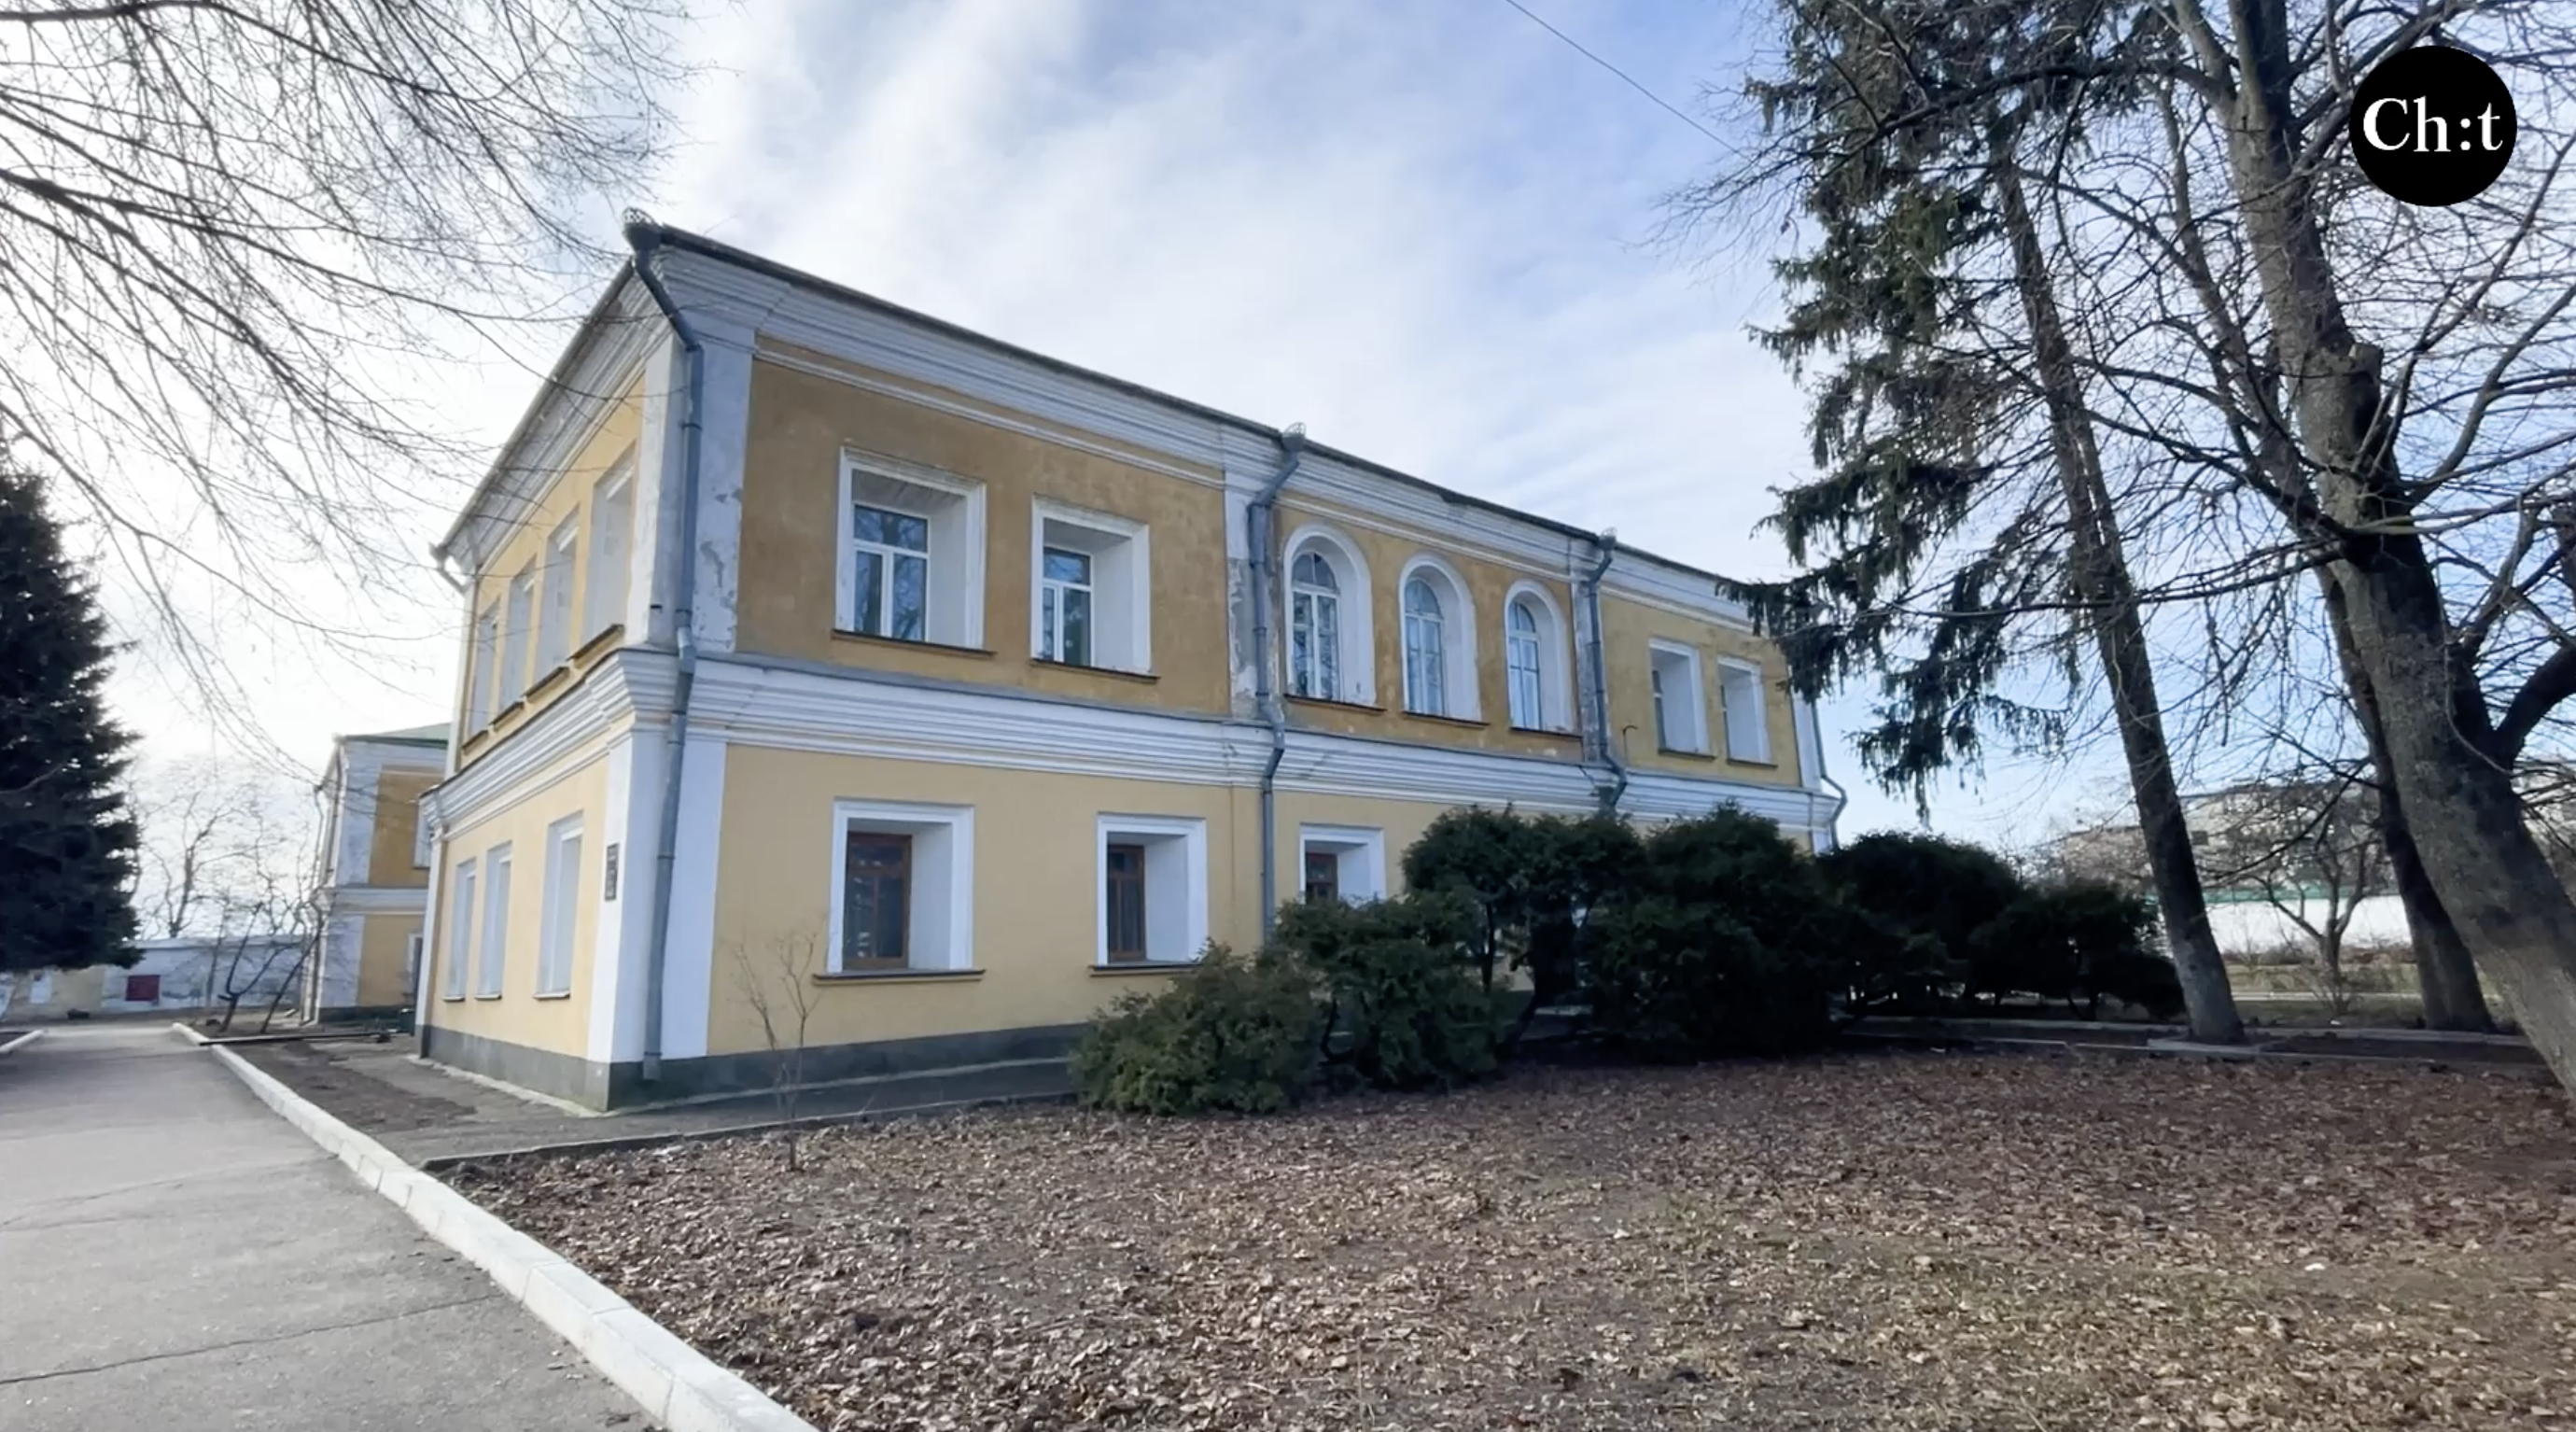 Будинок училища на території Троїцького монастиря у Чернігові